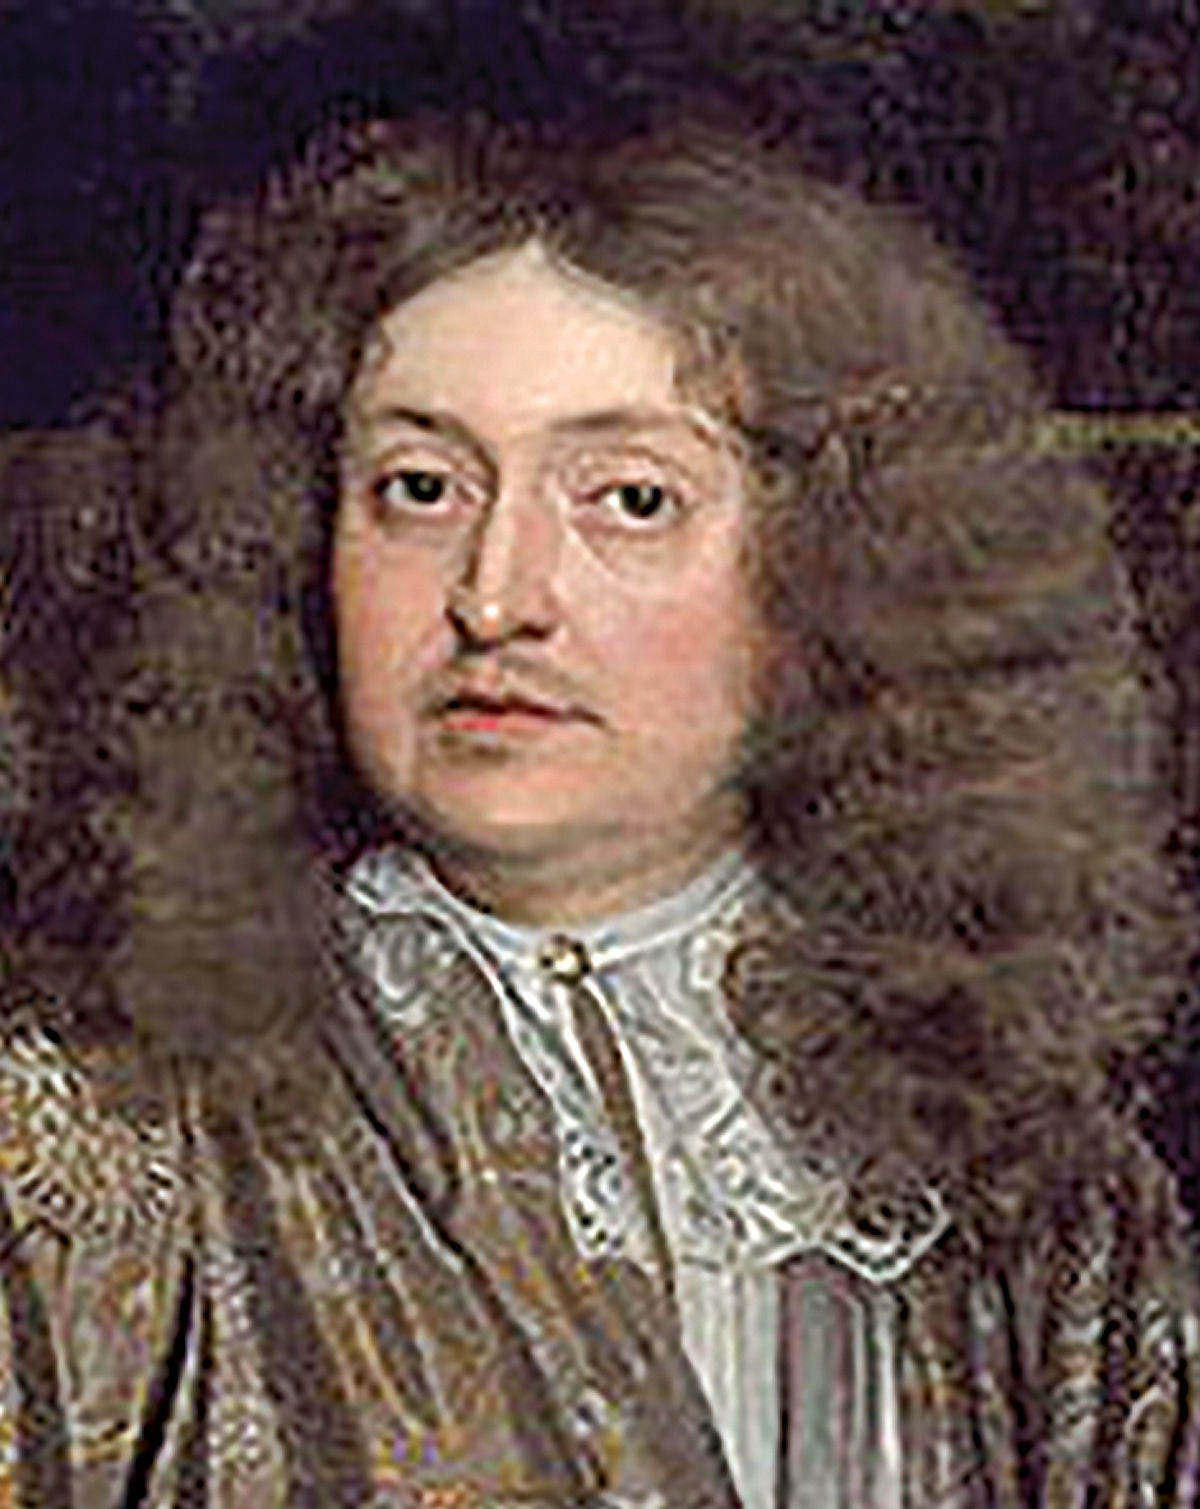 سر رابرت واینر، رهبر تعاونی لندن در قرن 17